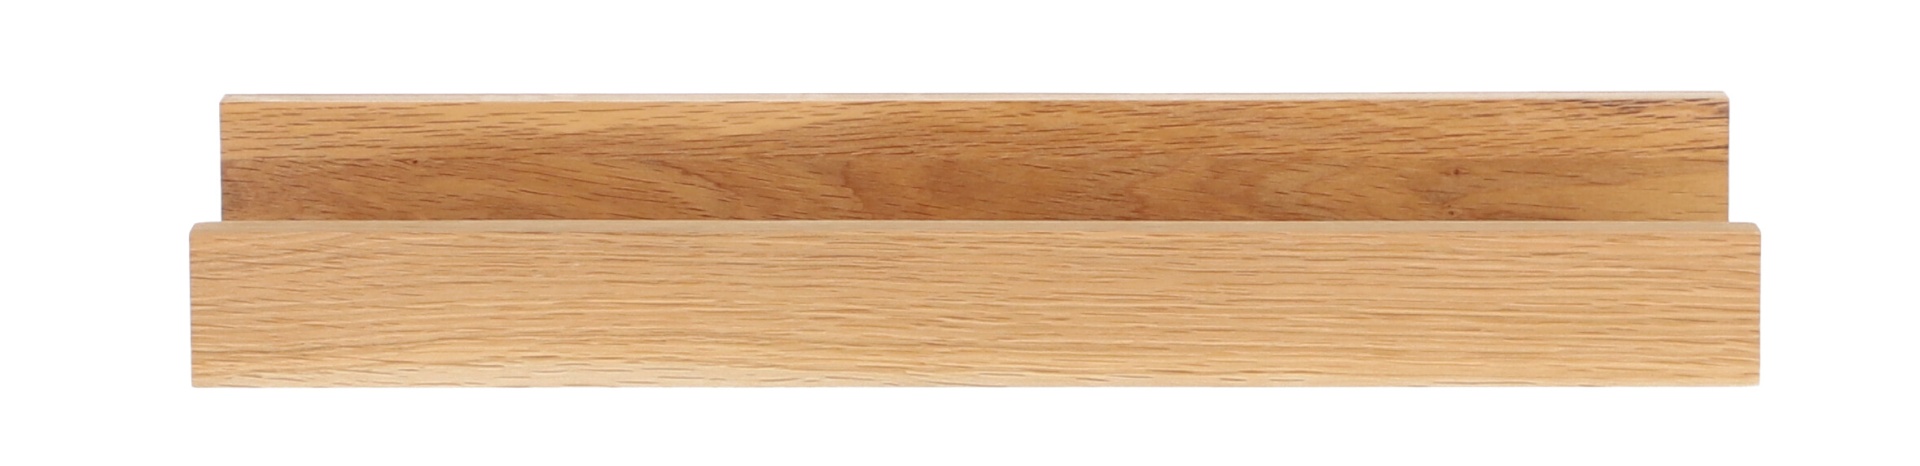 Das schlichte Wandregal Ell von der Marke Jan Kurtz hat ein skandinavisches Design. Gefertigt wurde es aus Eichenholz. Die Breite des Regals ist 80 cm.